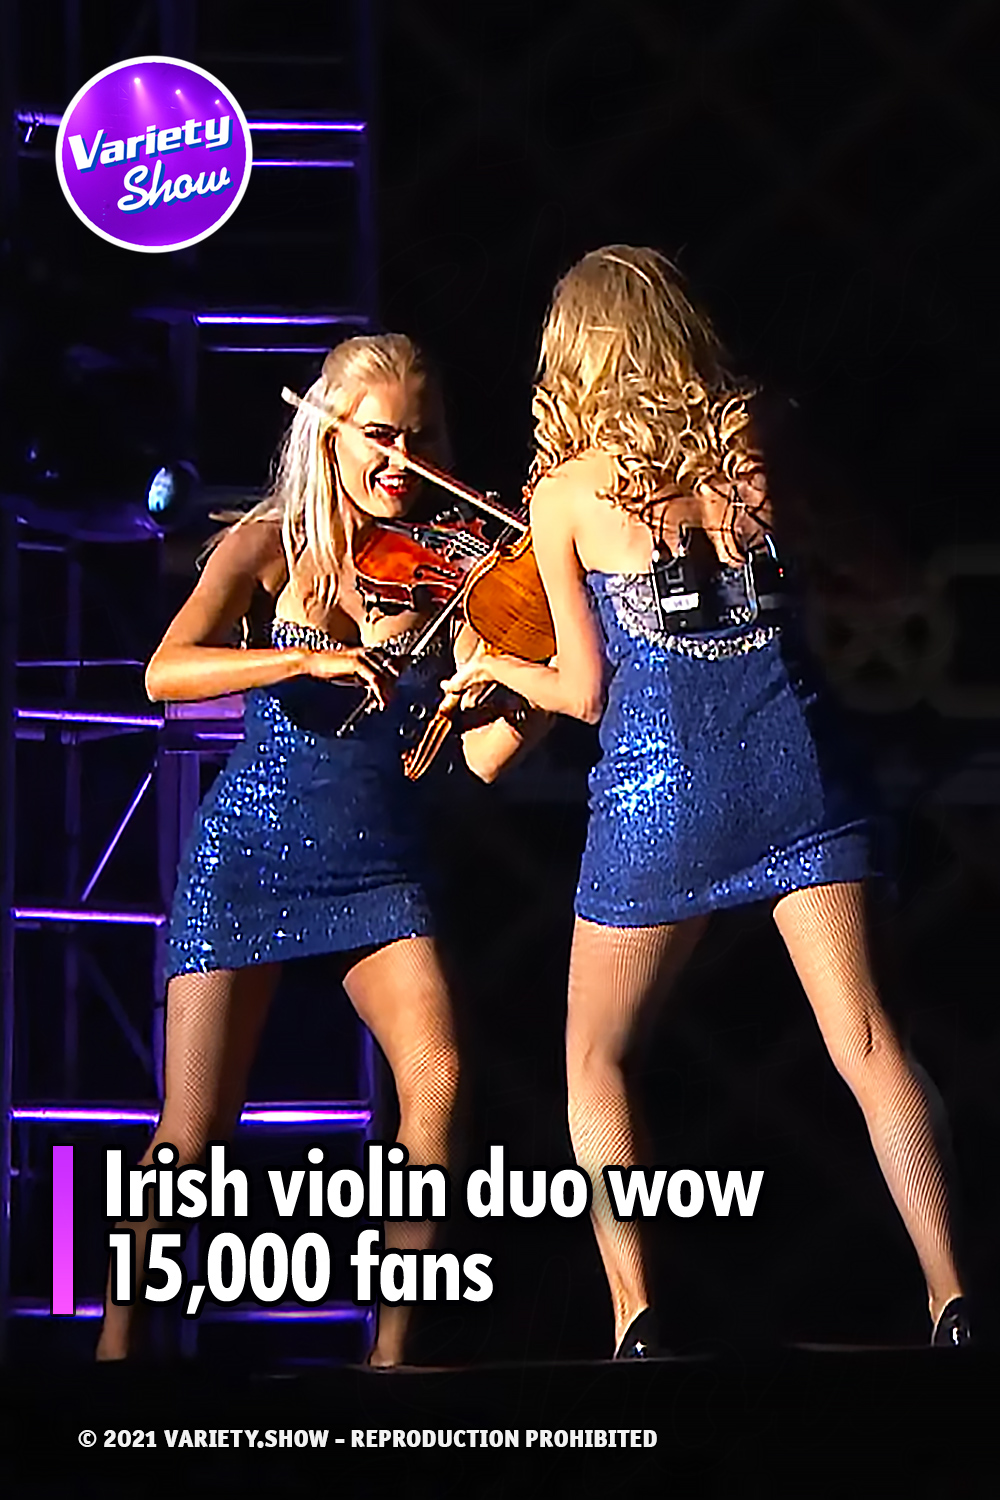 Irish violin duo wow 15,000 fans